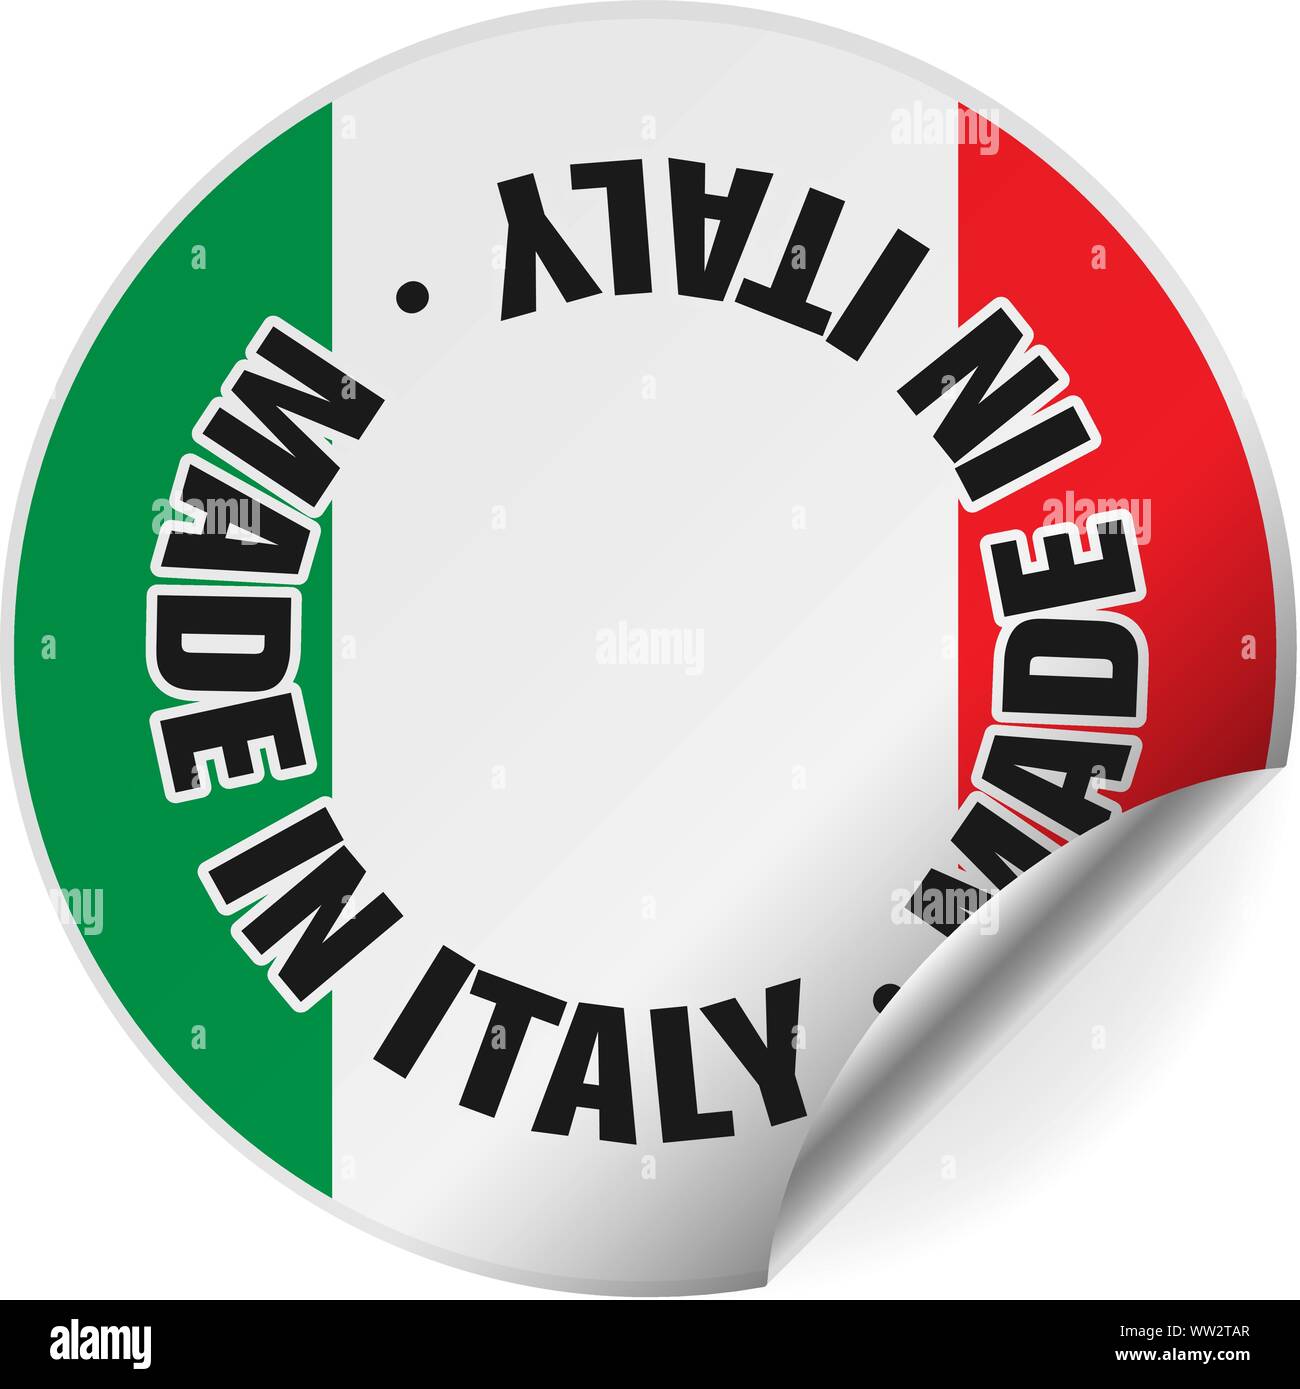 Made in Italy pegatina redonda o insignia con la bandera italiana, un lado enrolladas ilustración vectorial Ilustración del Vector